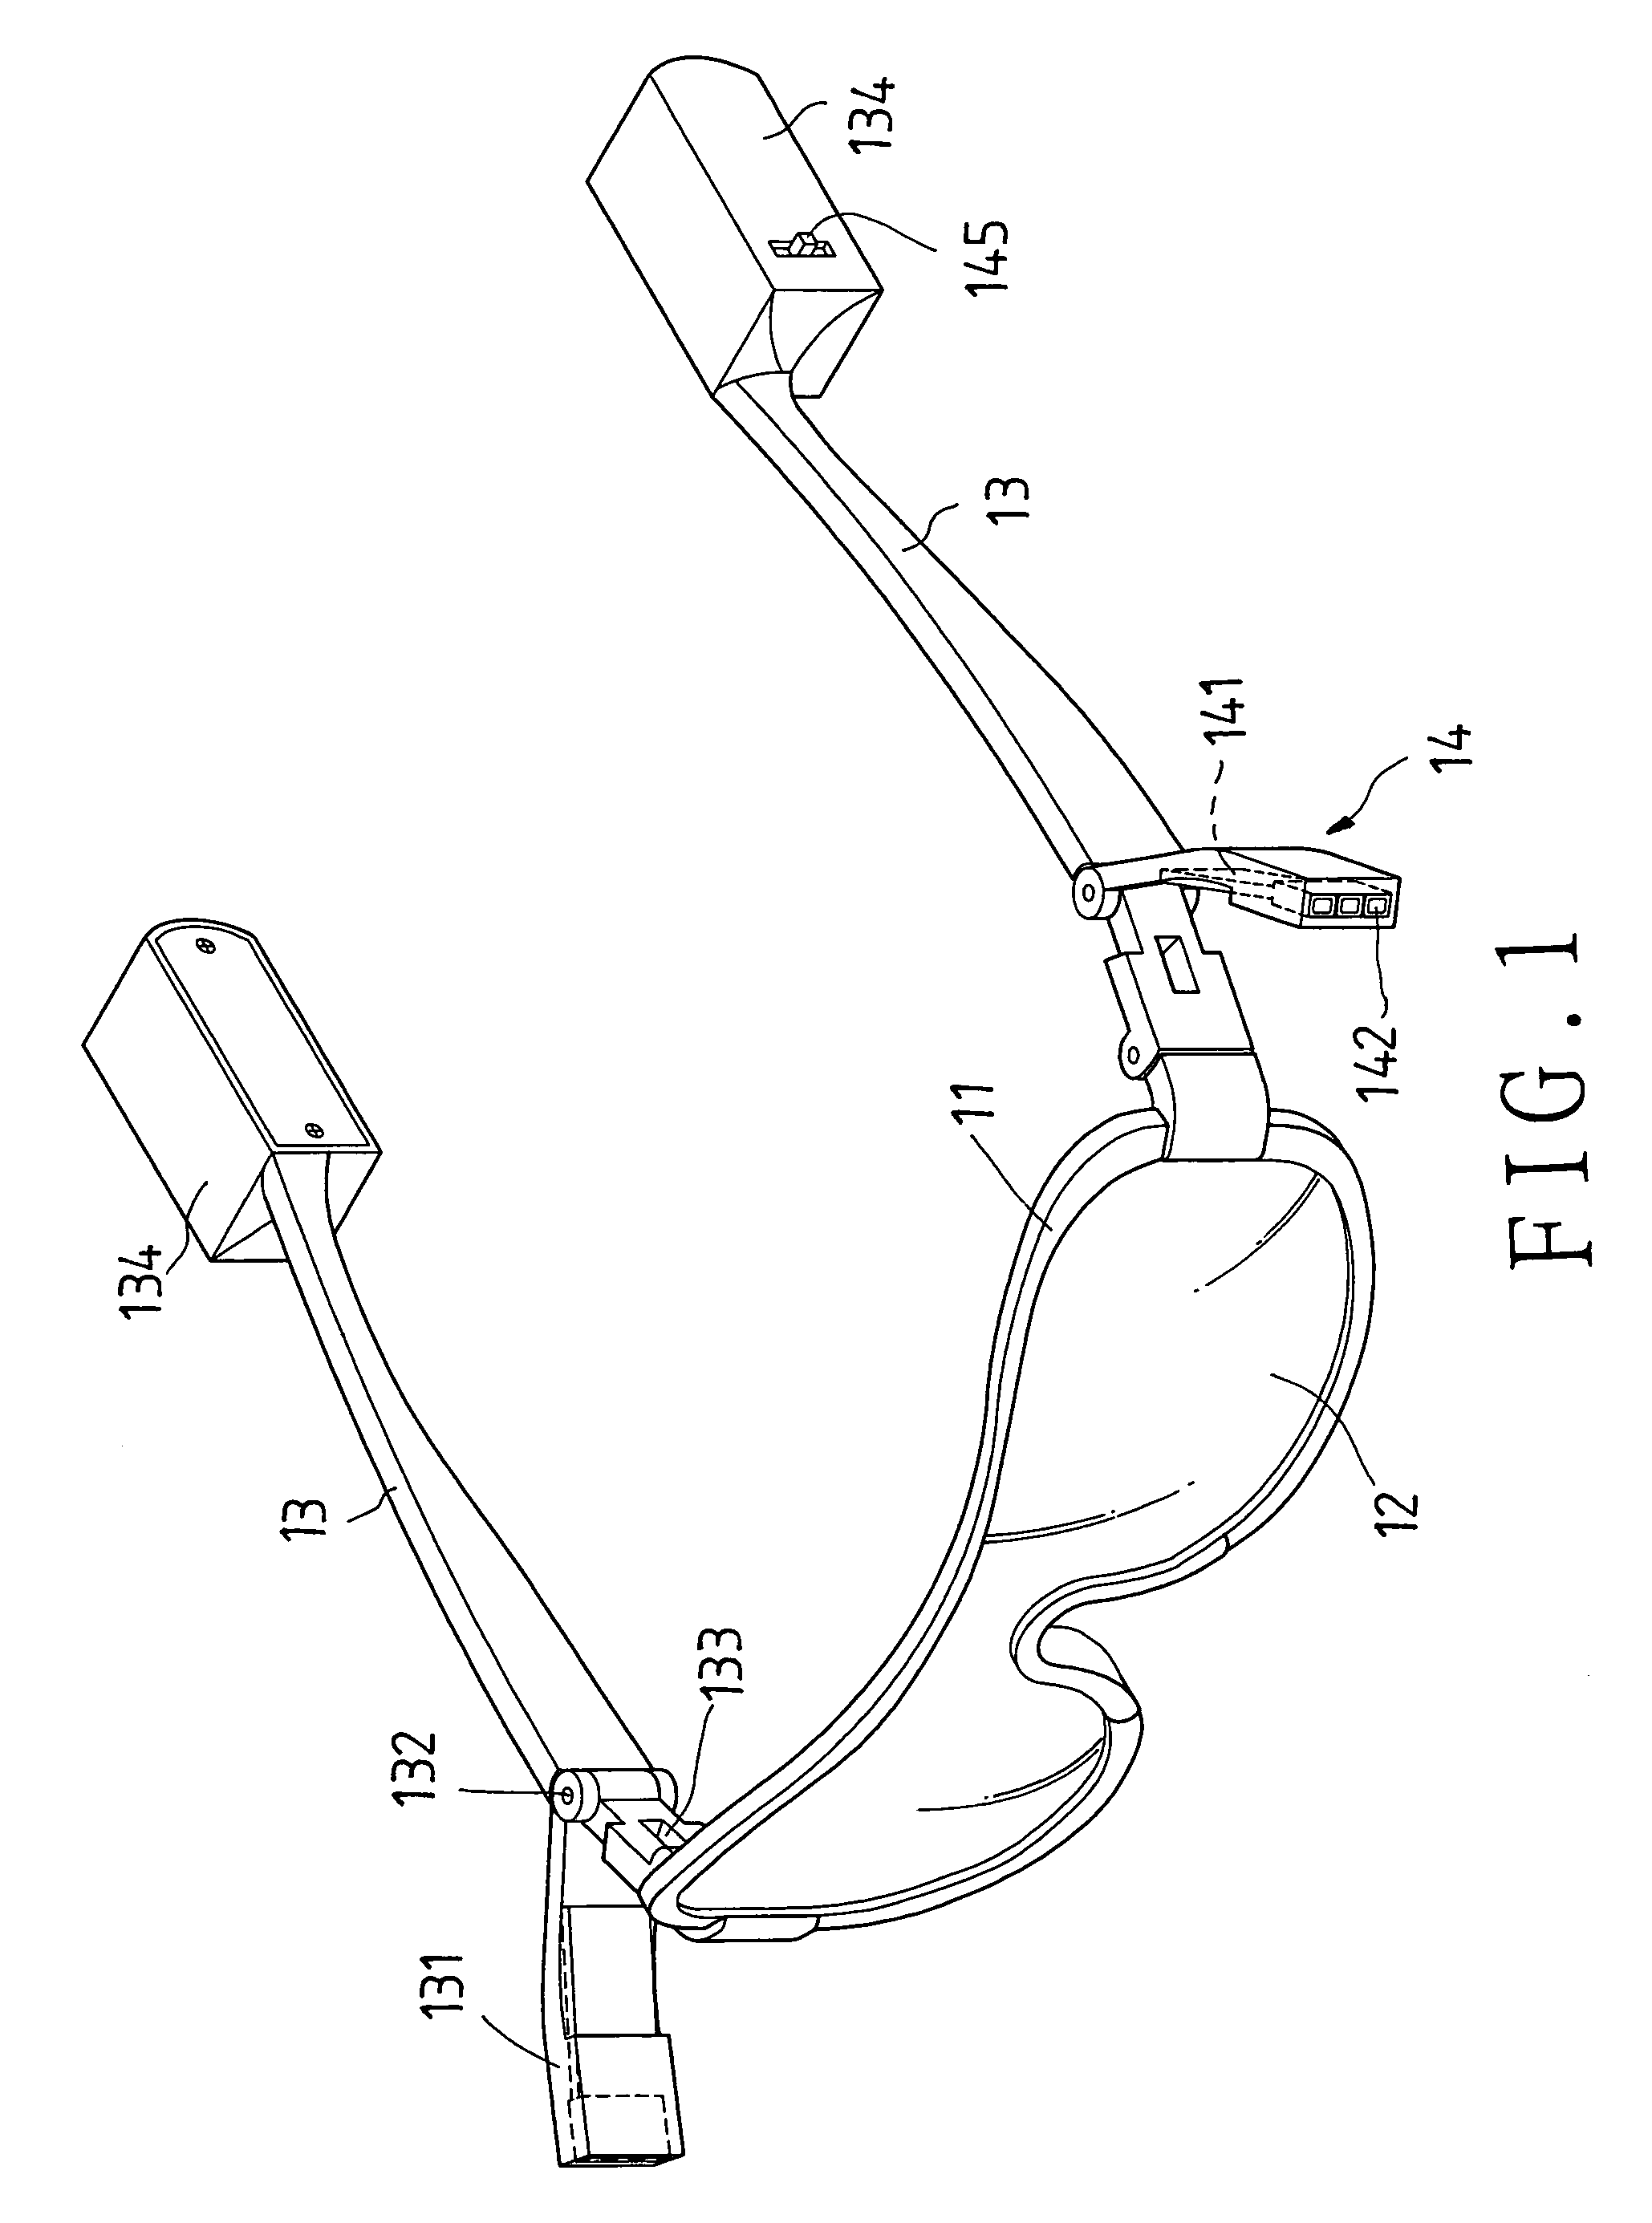 Illuminating device of eyeglasses